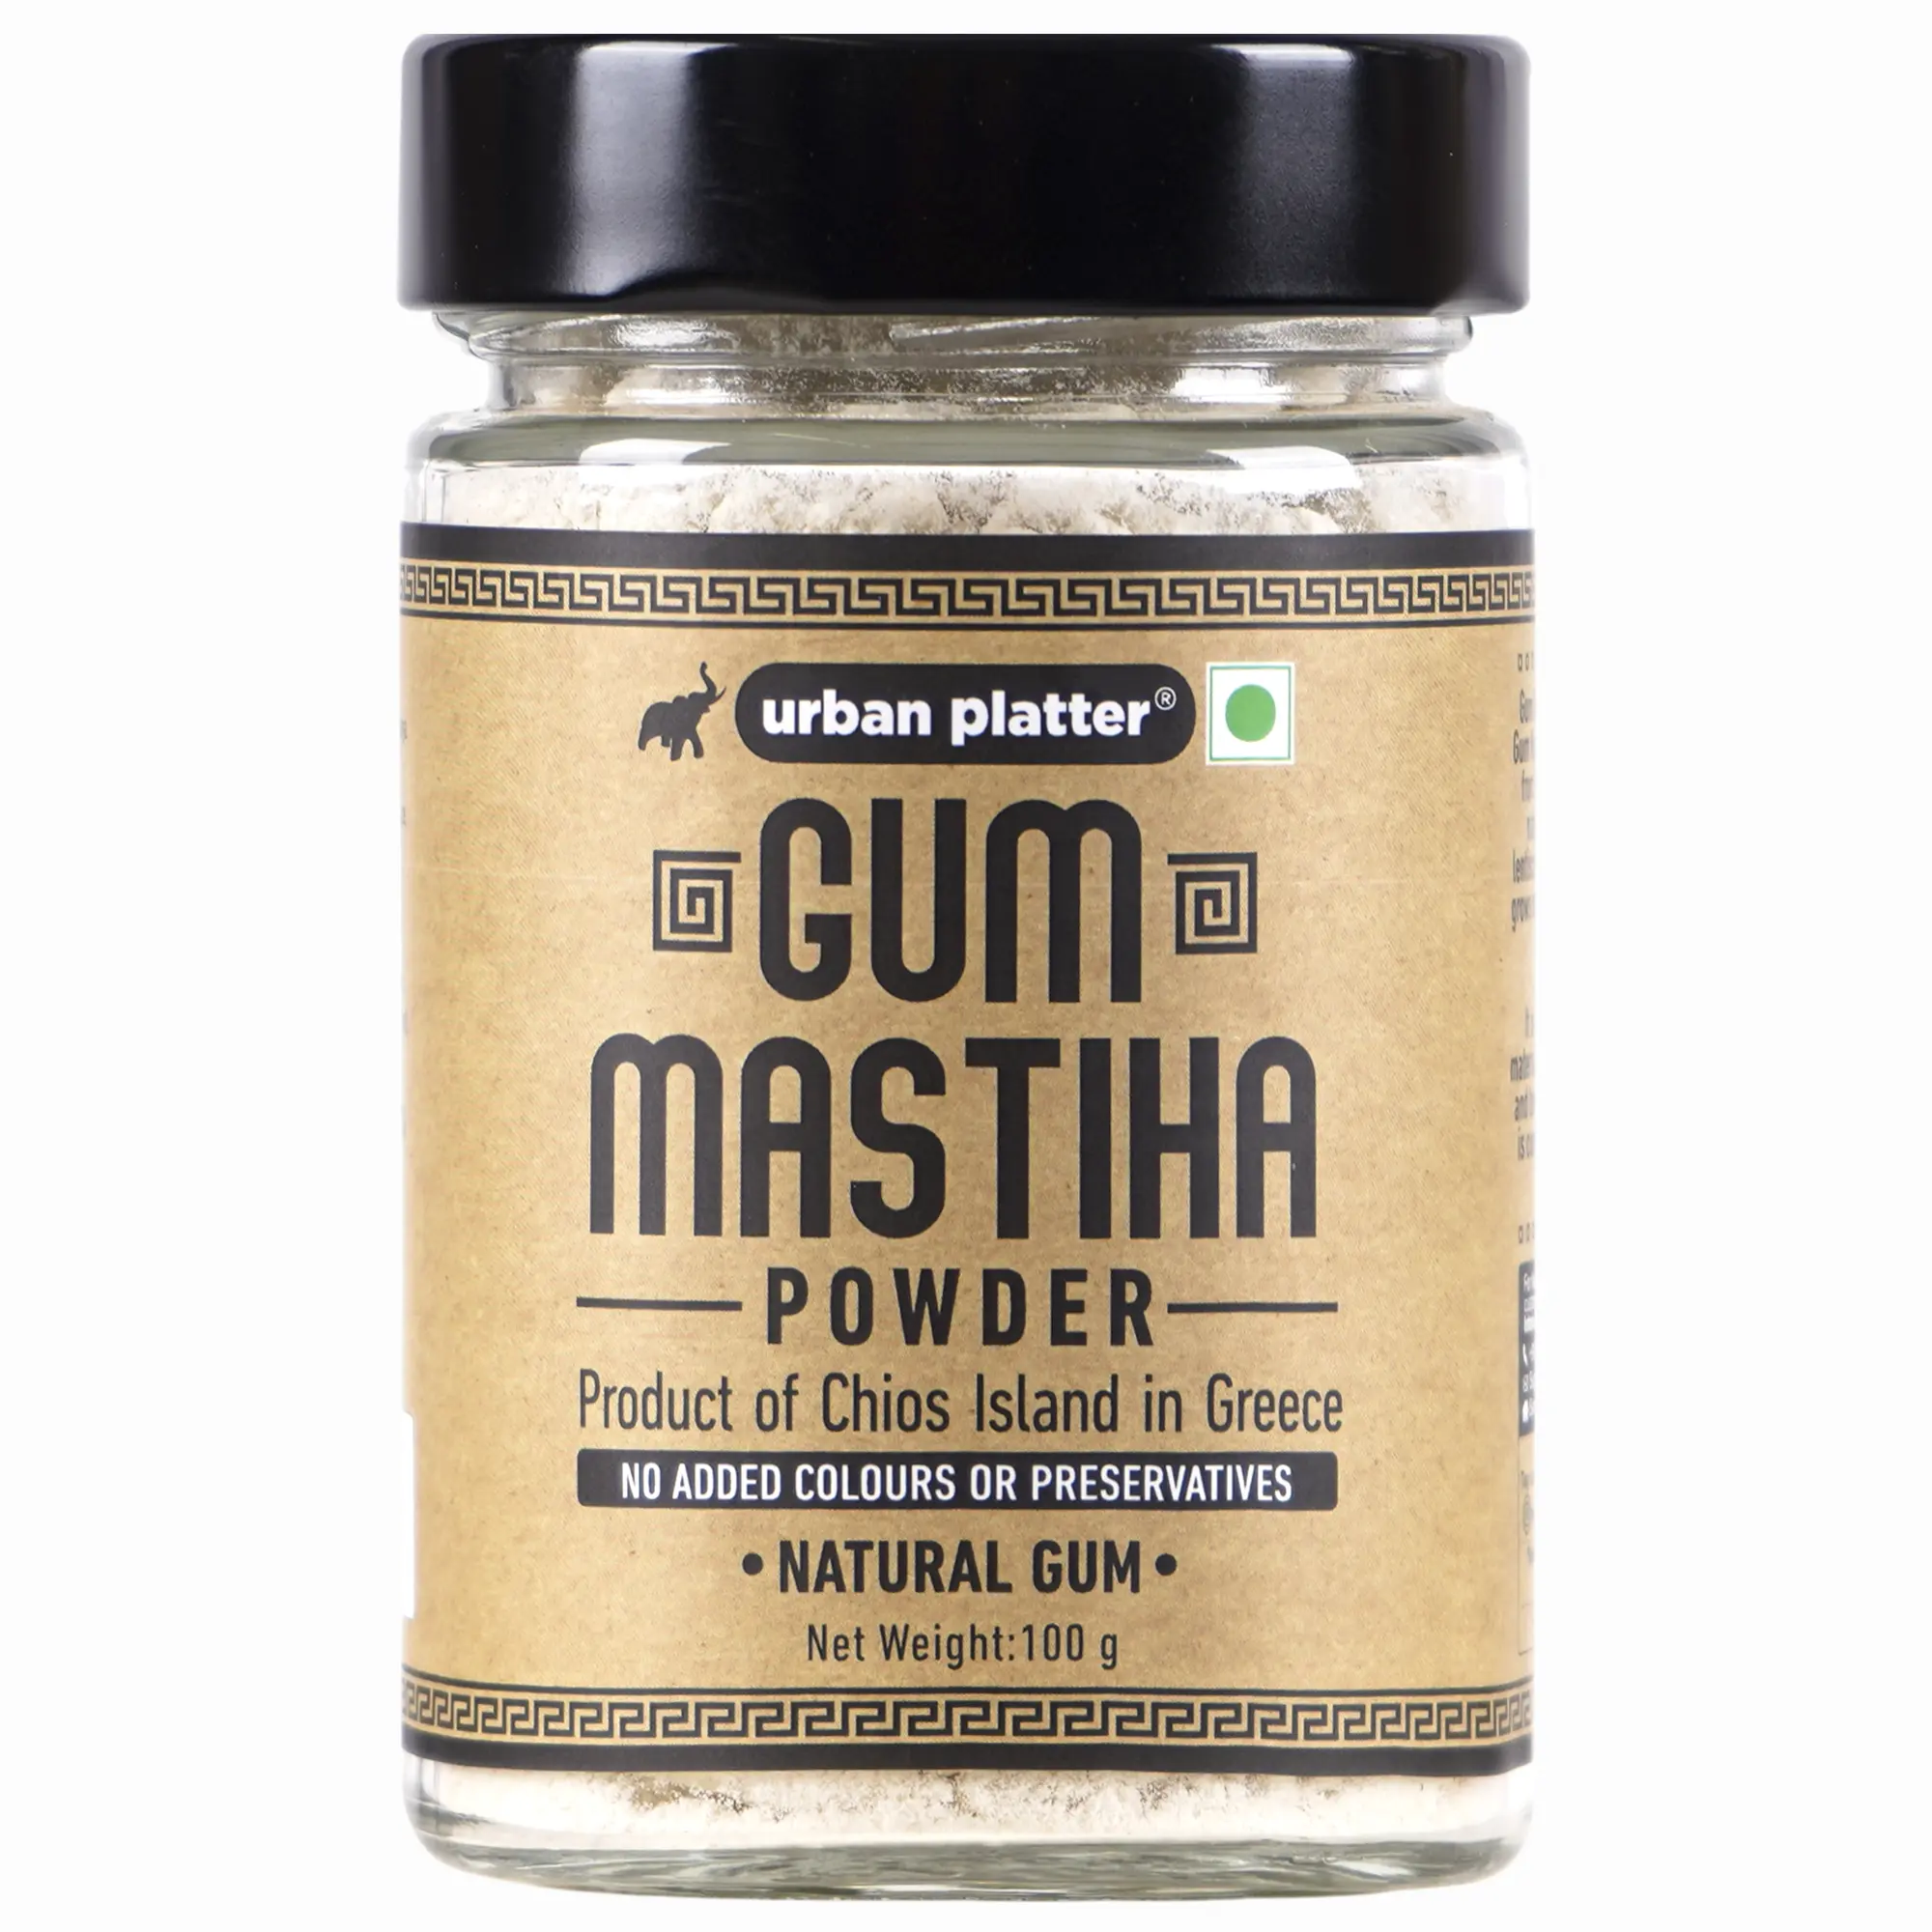 What is Mastic Gum (Mastiha)